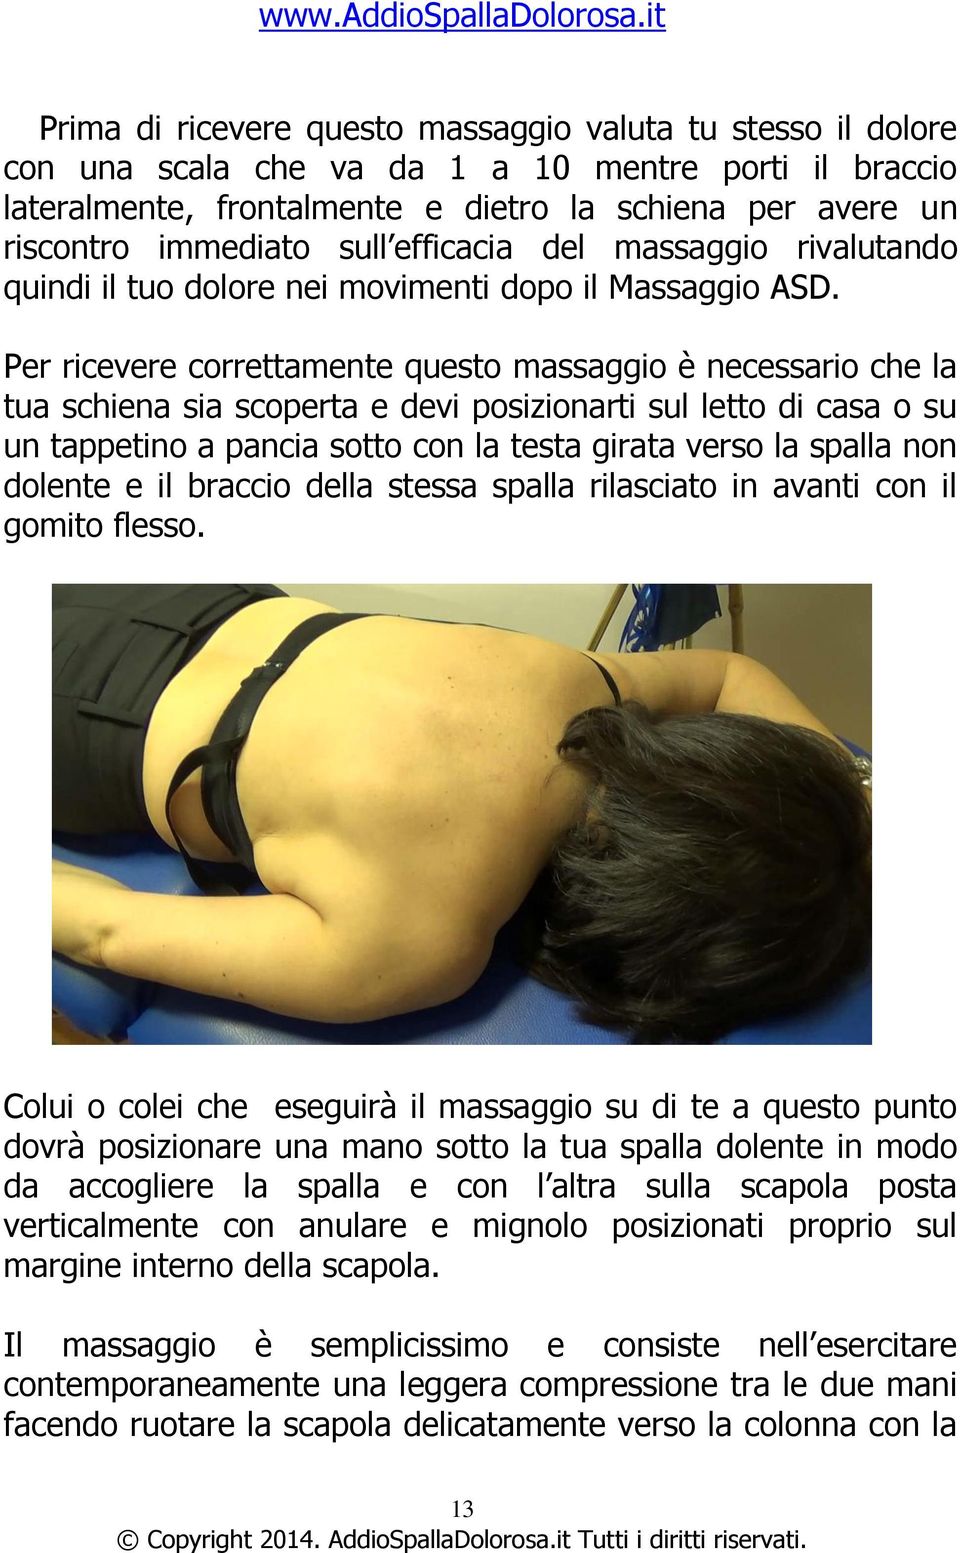 Per ricevere correttamente questo massaggio è necessario che la tua schiena sia scoperta e devi posizionarti sul letto di casa o su un tappetino a pancia sotto con la testa girata verso la spalla non